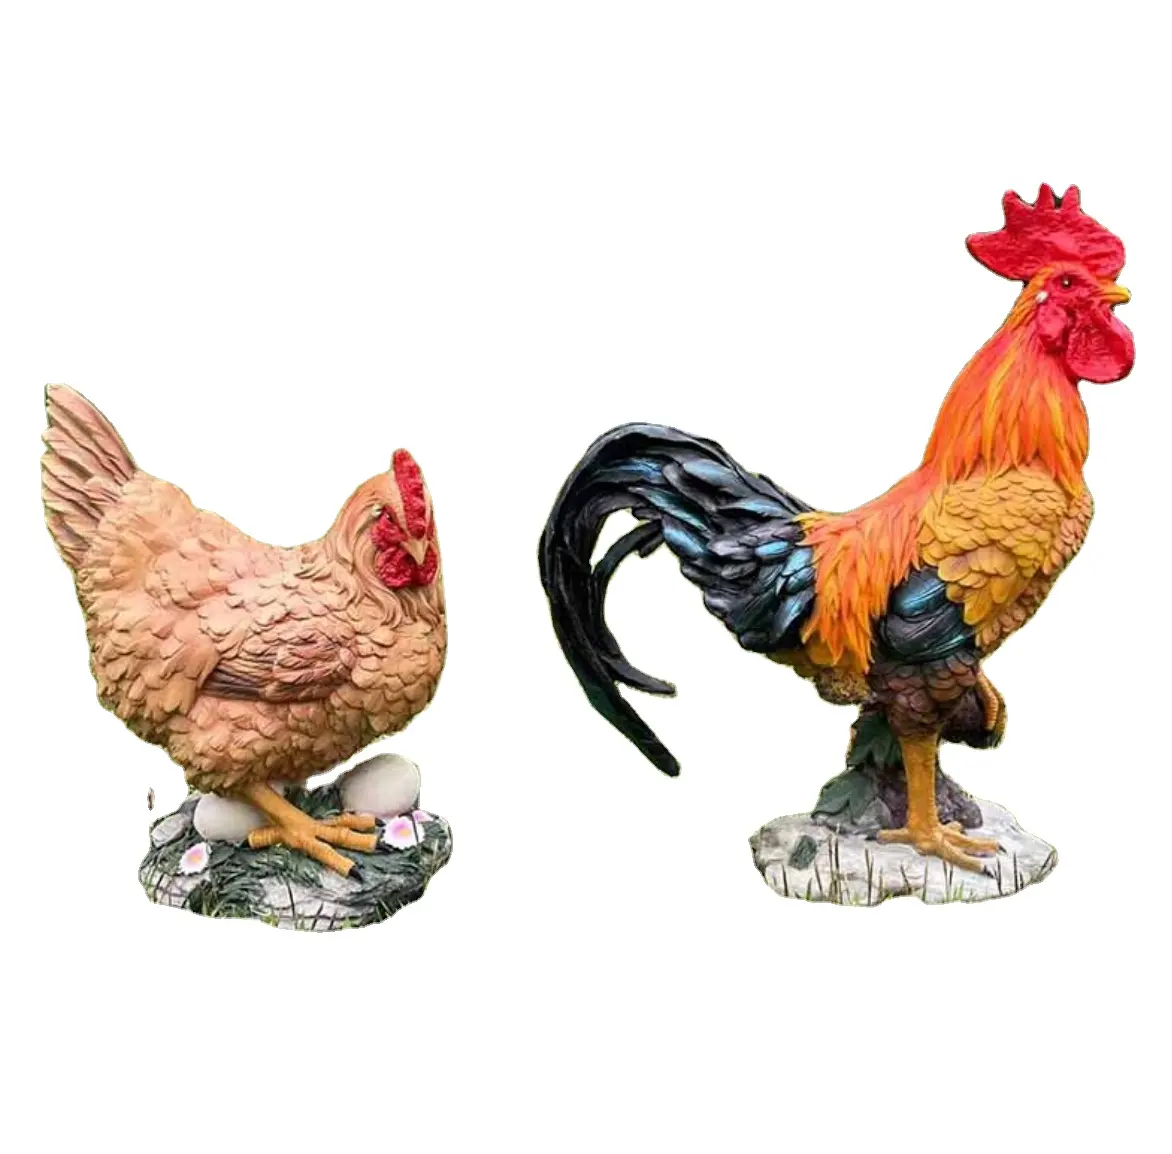 핫 세일 치킨 장식 새로운 디자인 치킨 야외 동상 수지 정원 동상 동물 조각 실내 방수 동상